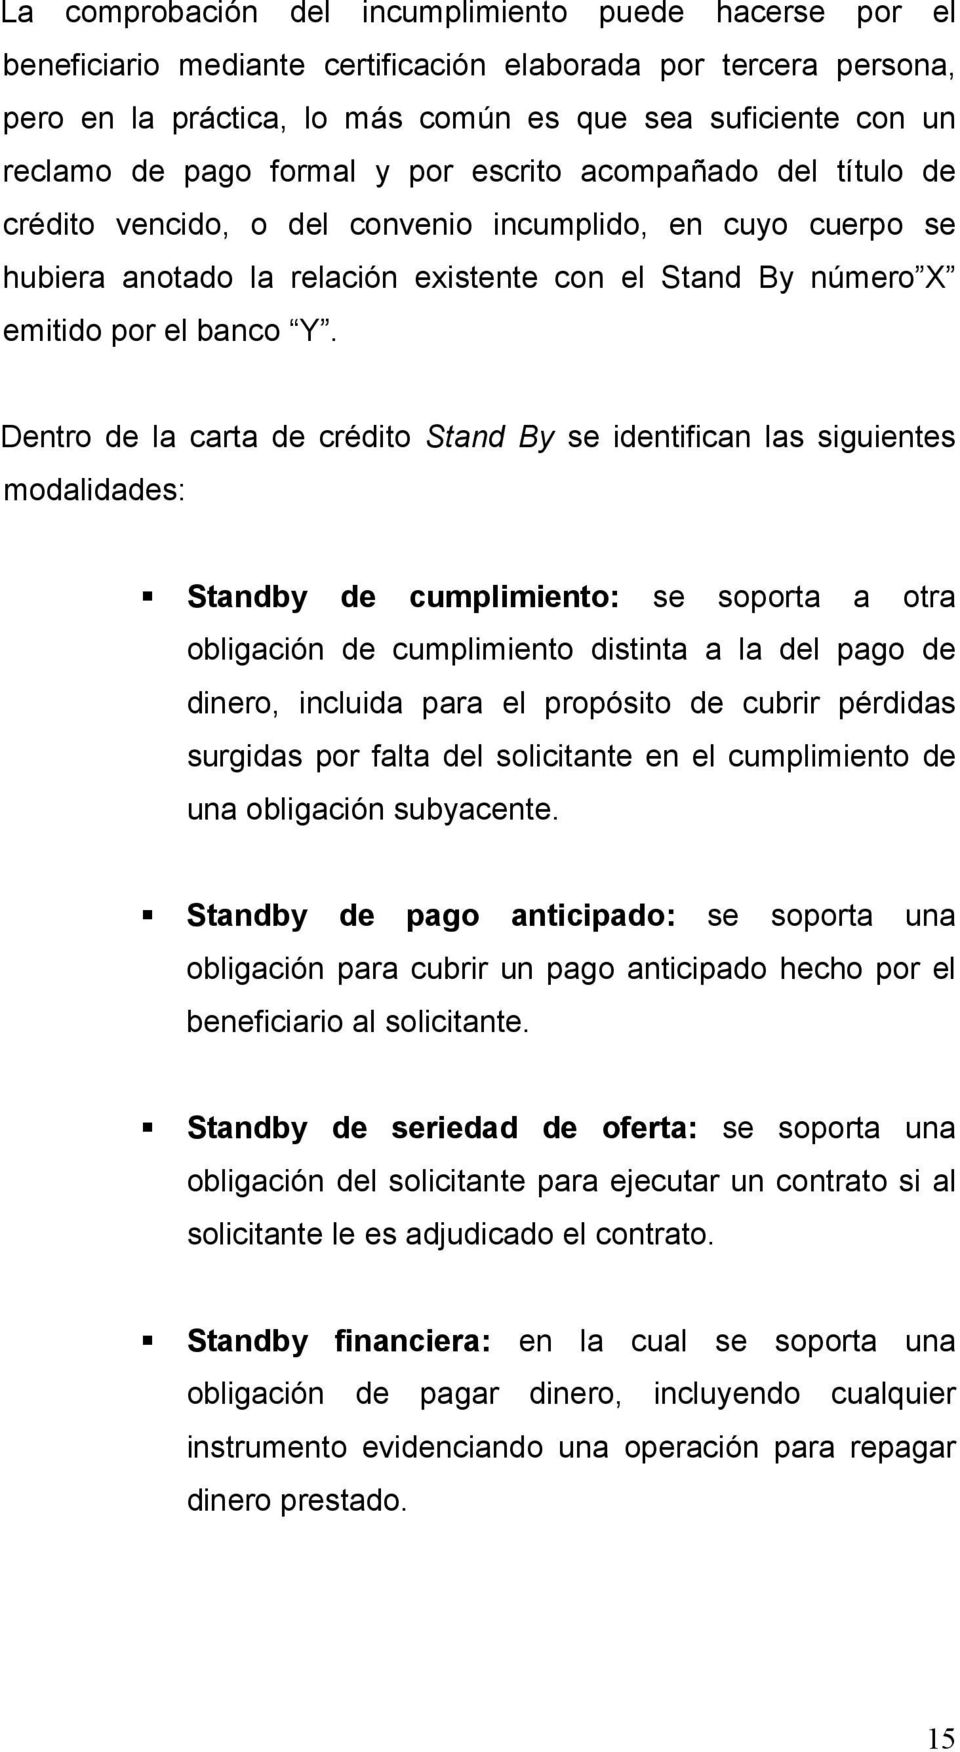 Dentro de la carta de crédito Stand By se identifican las siguientes modalidades: Standby de cumplimiento: se soporta a otra obligación de cumplimiento distinta a la del pago de dinero, incluida para